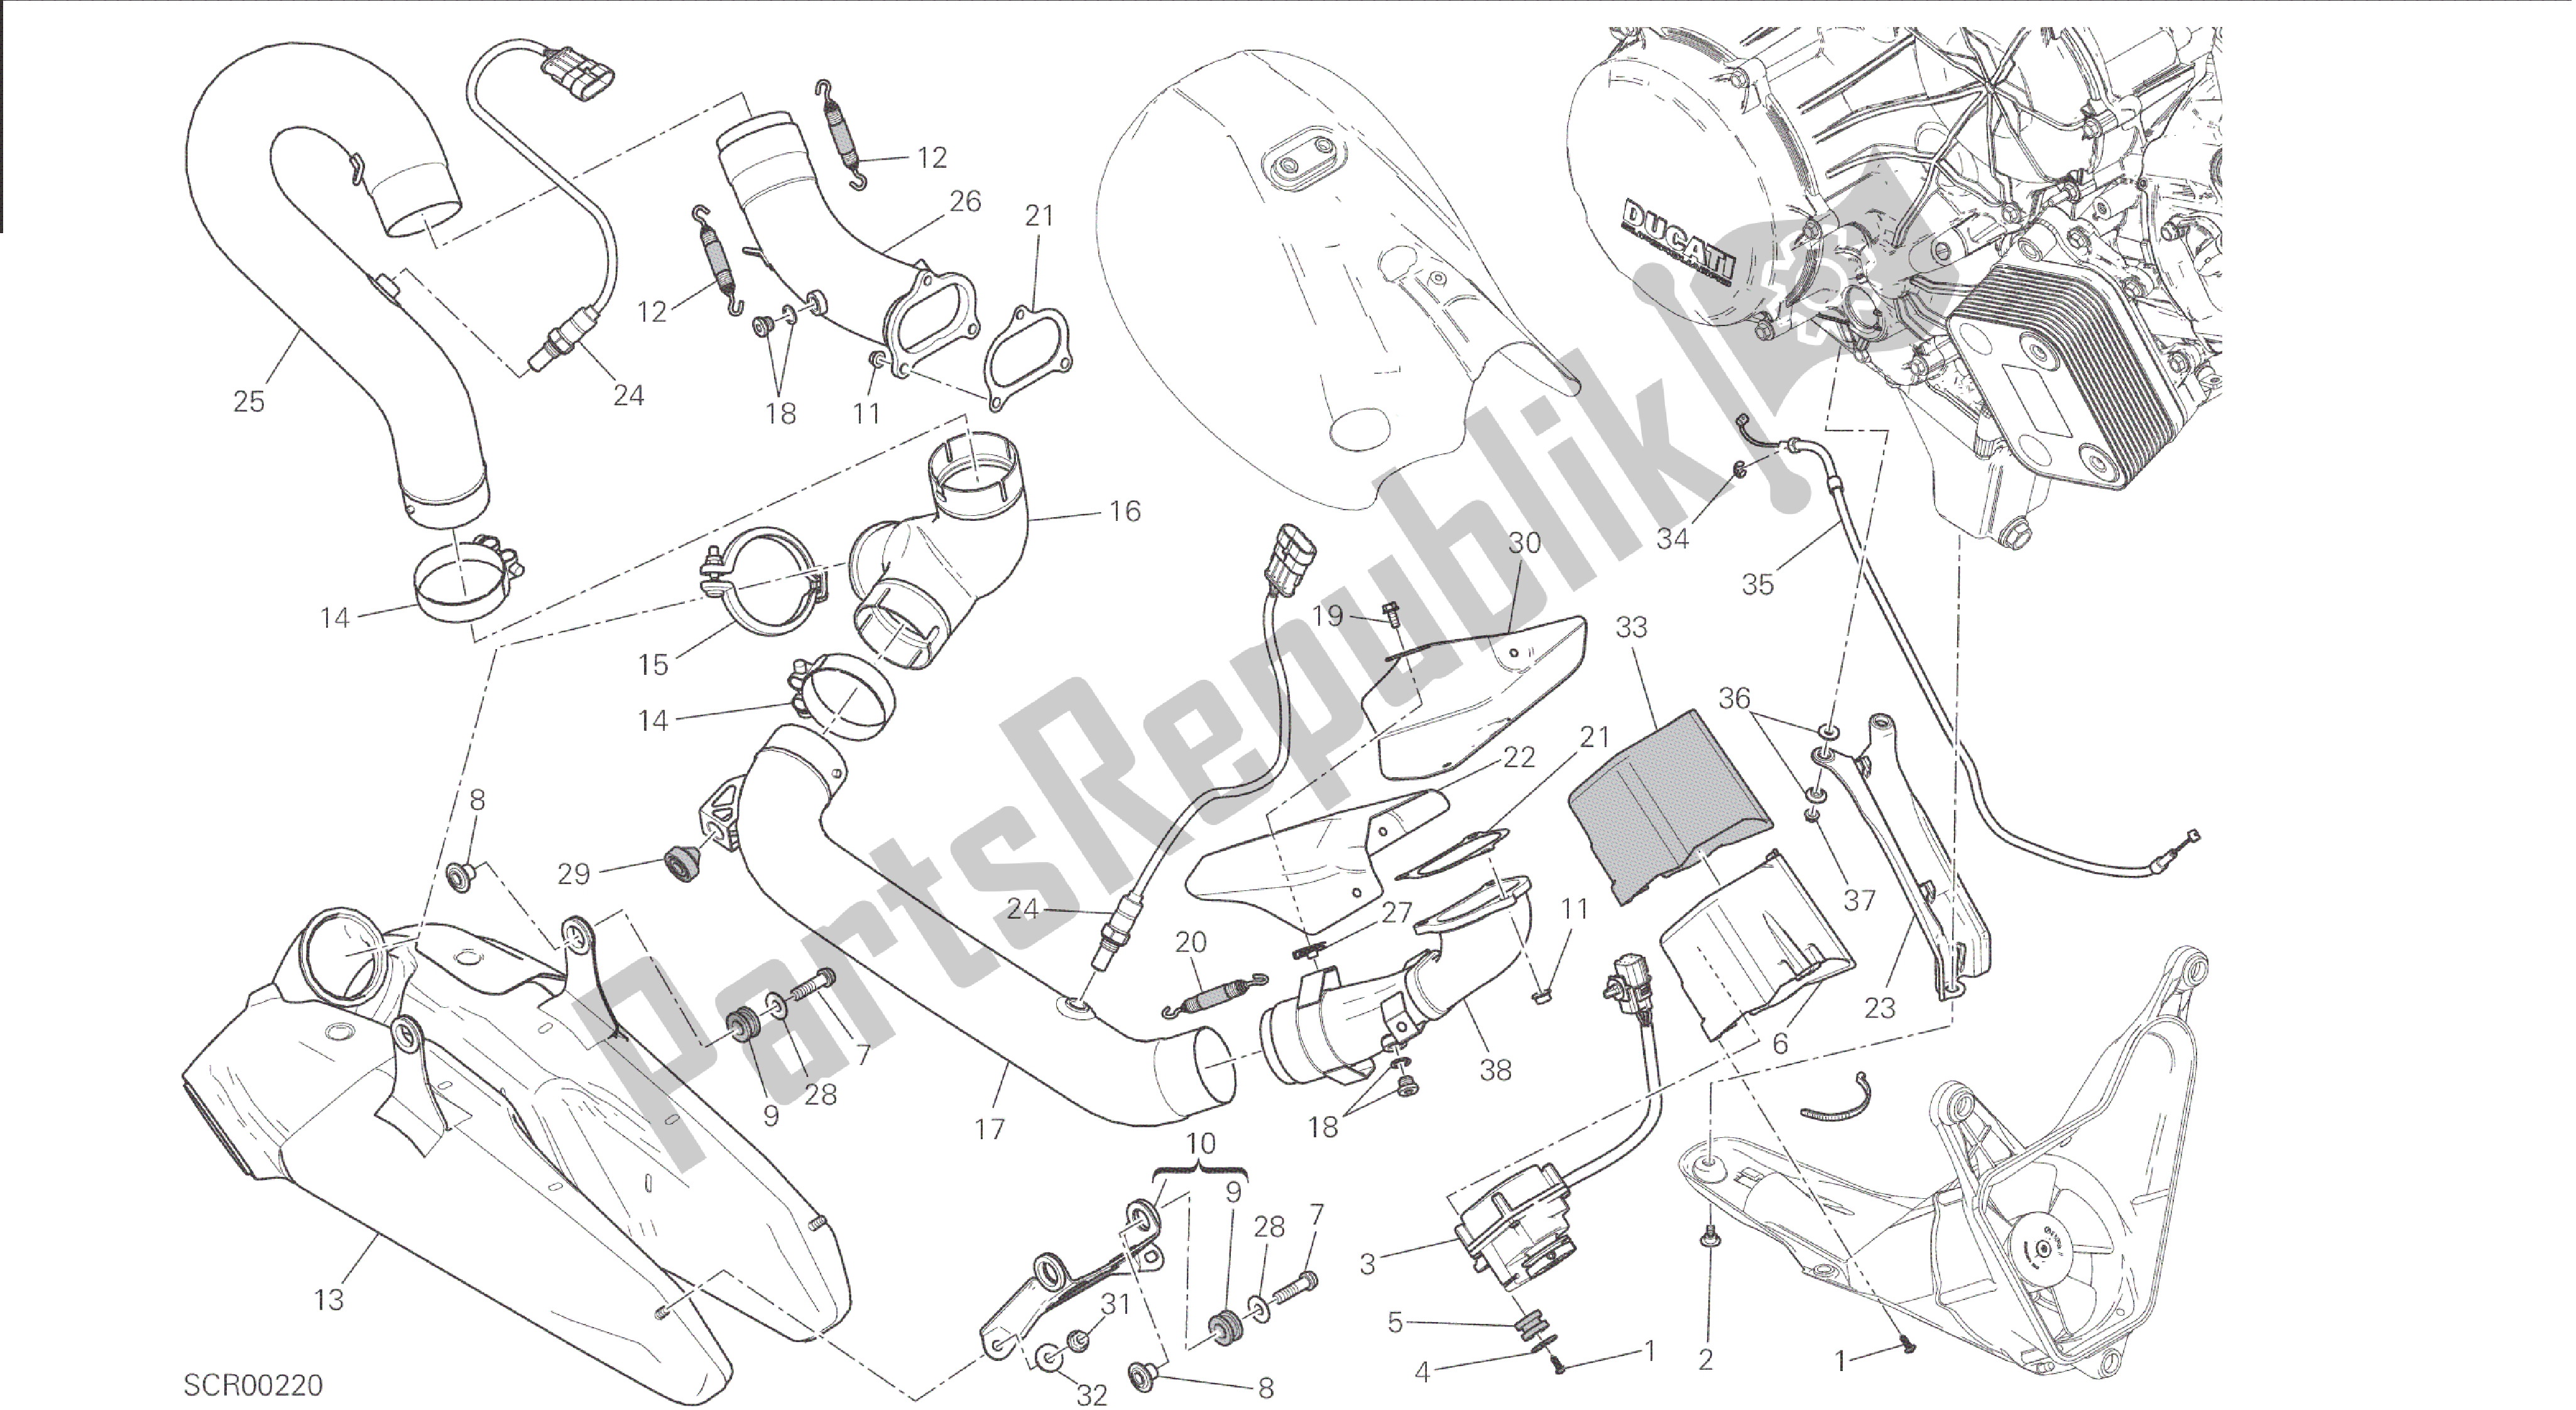 Todas las partes para Dibujo 019 - Gruppo Scarico [mod: 1199 R; Xst: Marco De Grupo Aus, Eur, Fra, Jap, Twn] de Ducati Panigale 1198 2015